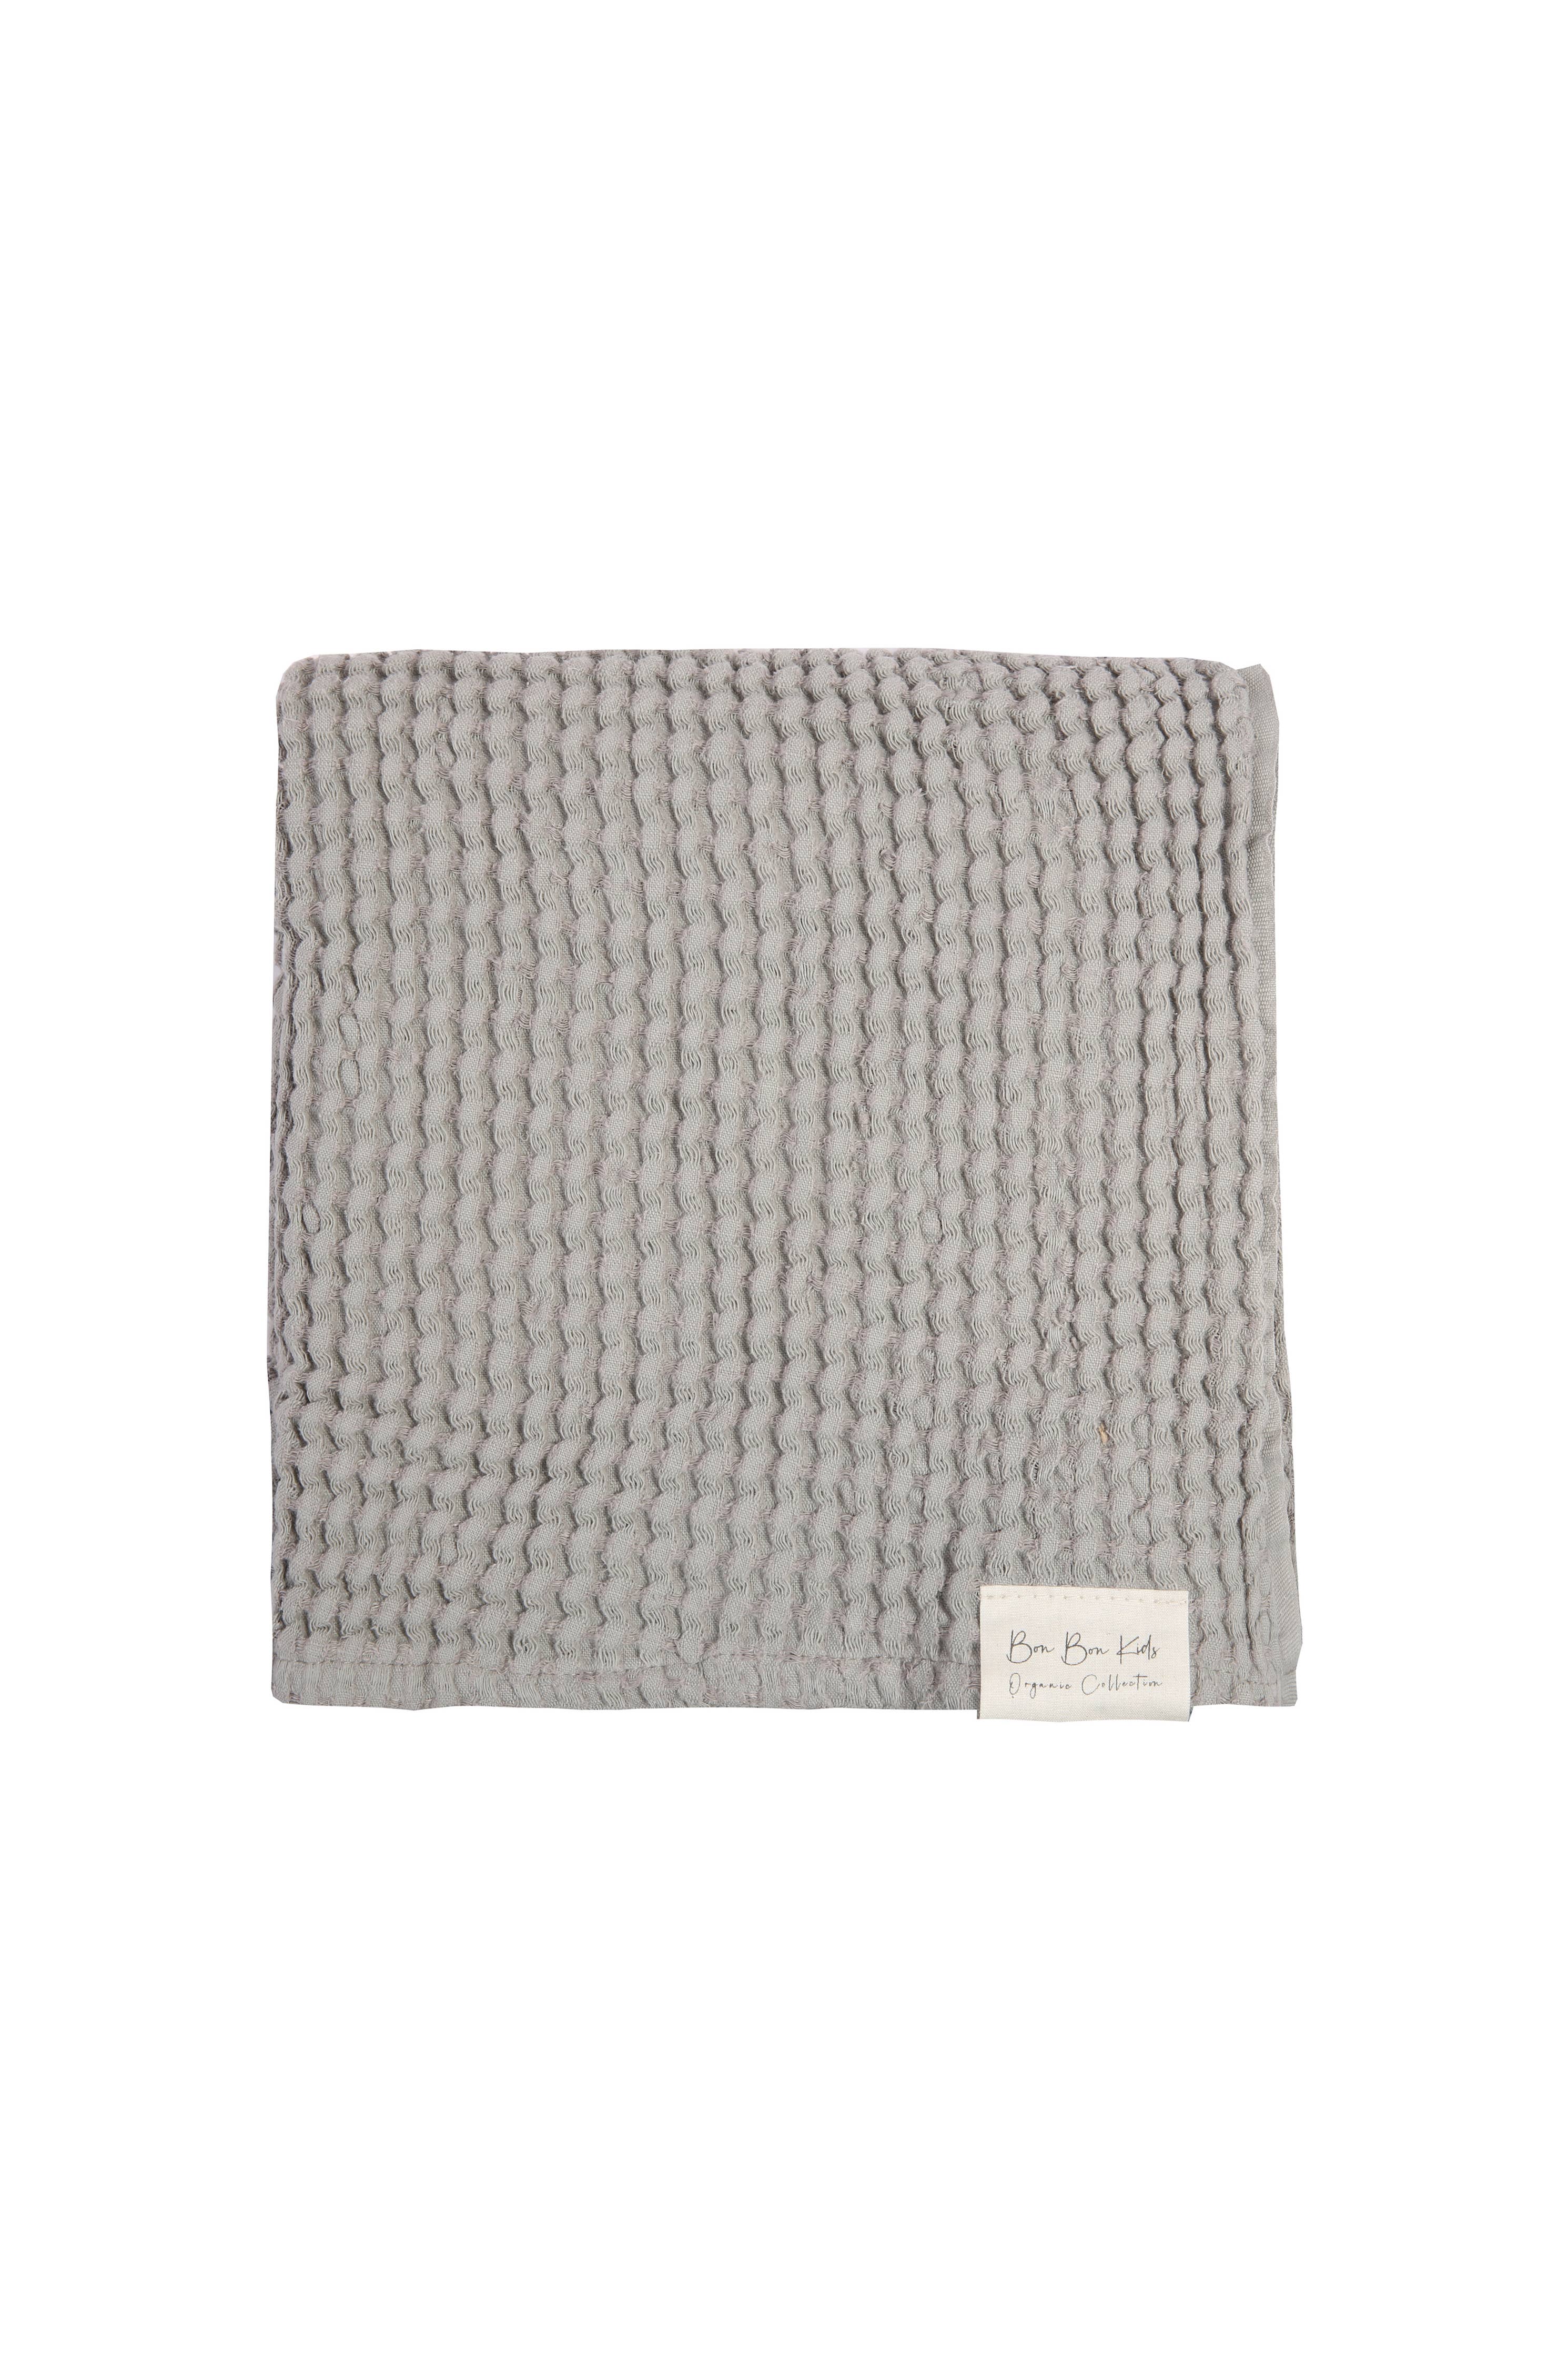 Boho linen blanket gray